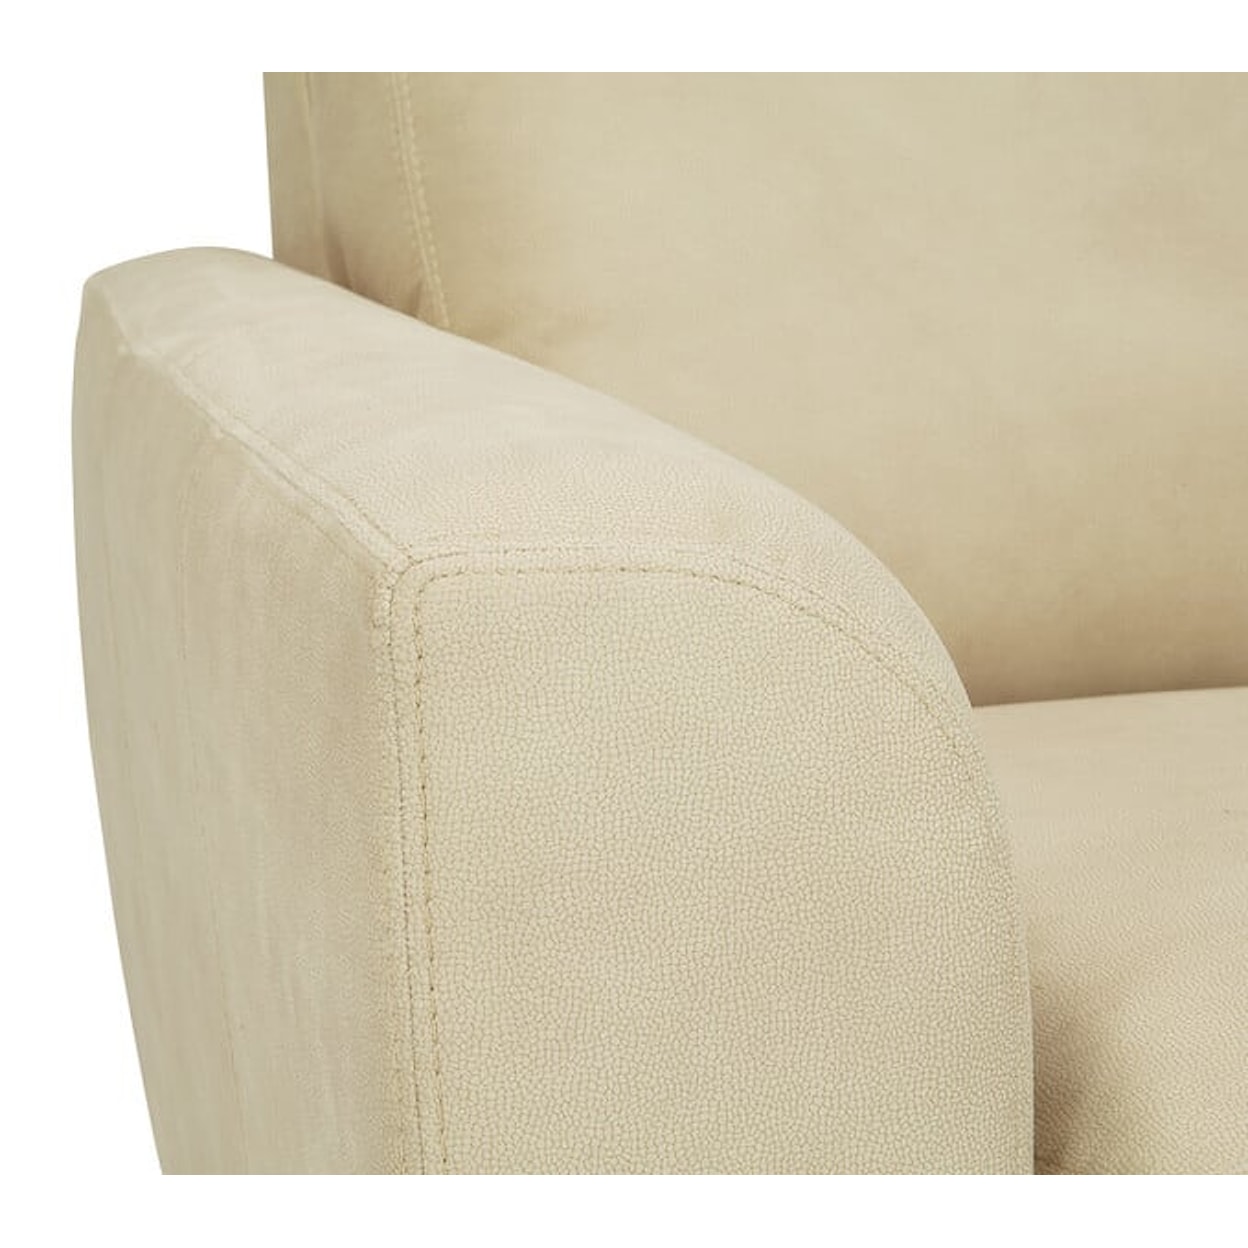 Palliser Marymount Marymount Upholstered Chair